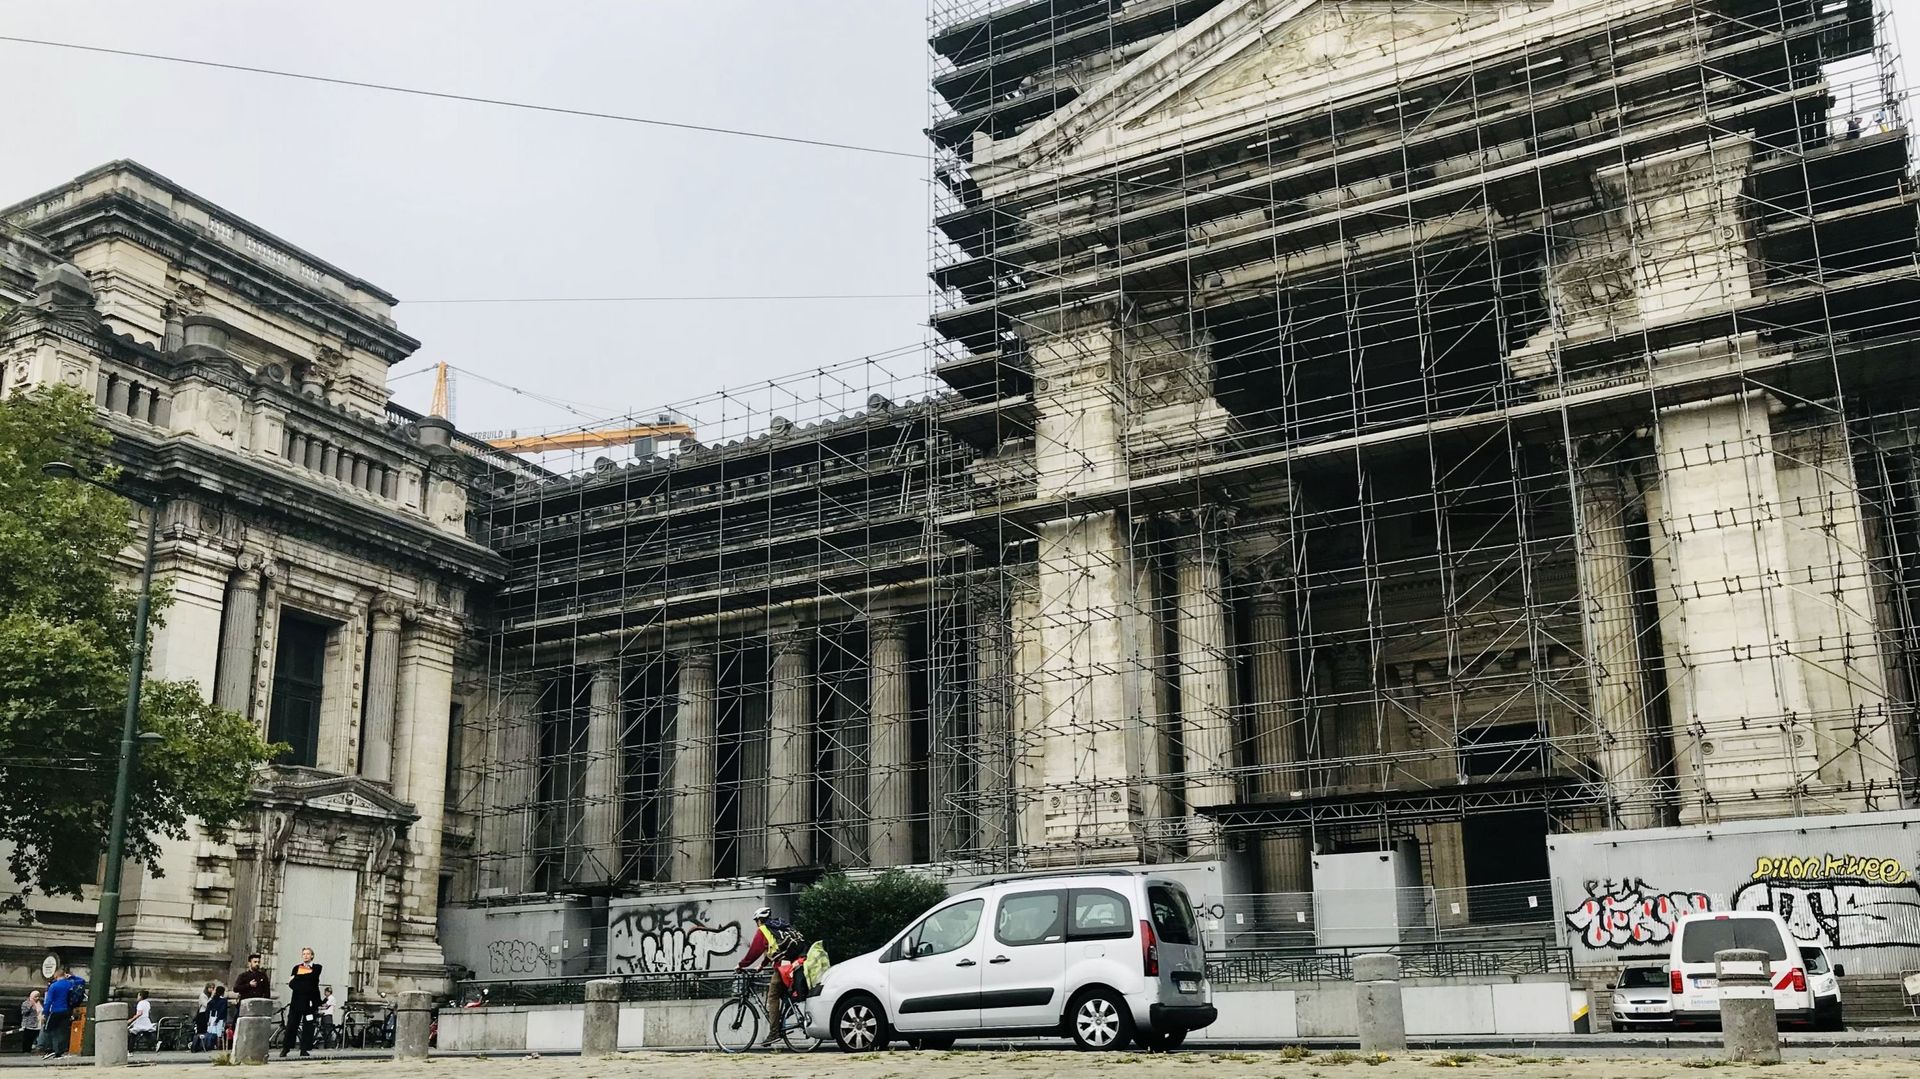 Le Palais de justice de Bruxelles avec ses échafaudages